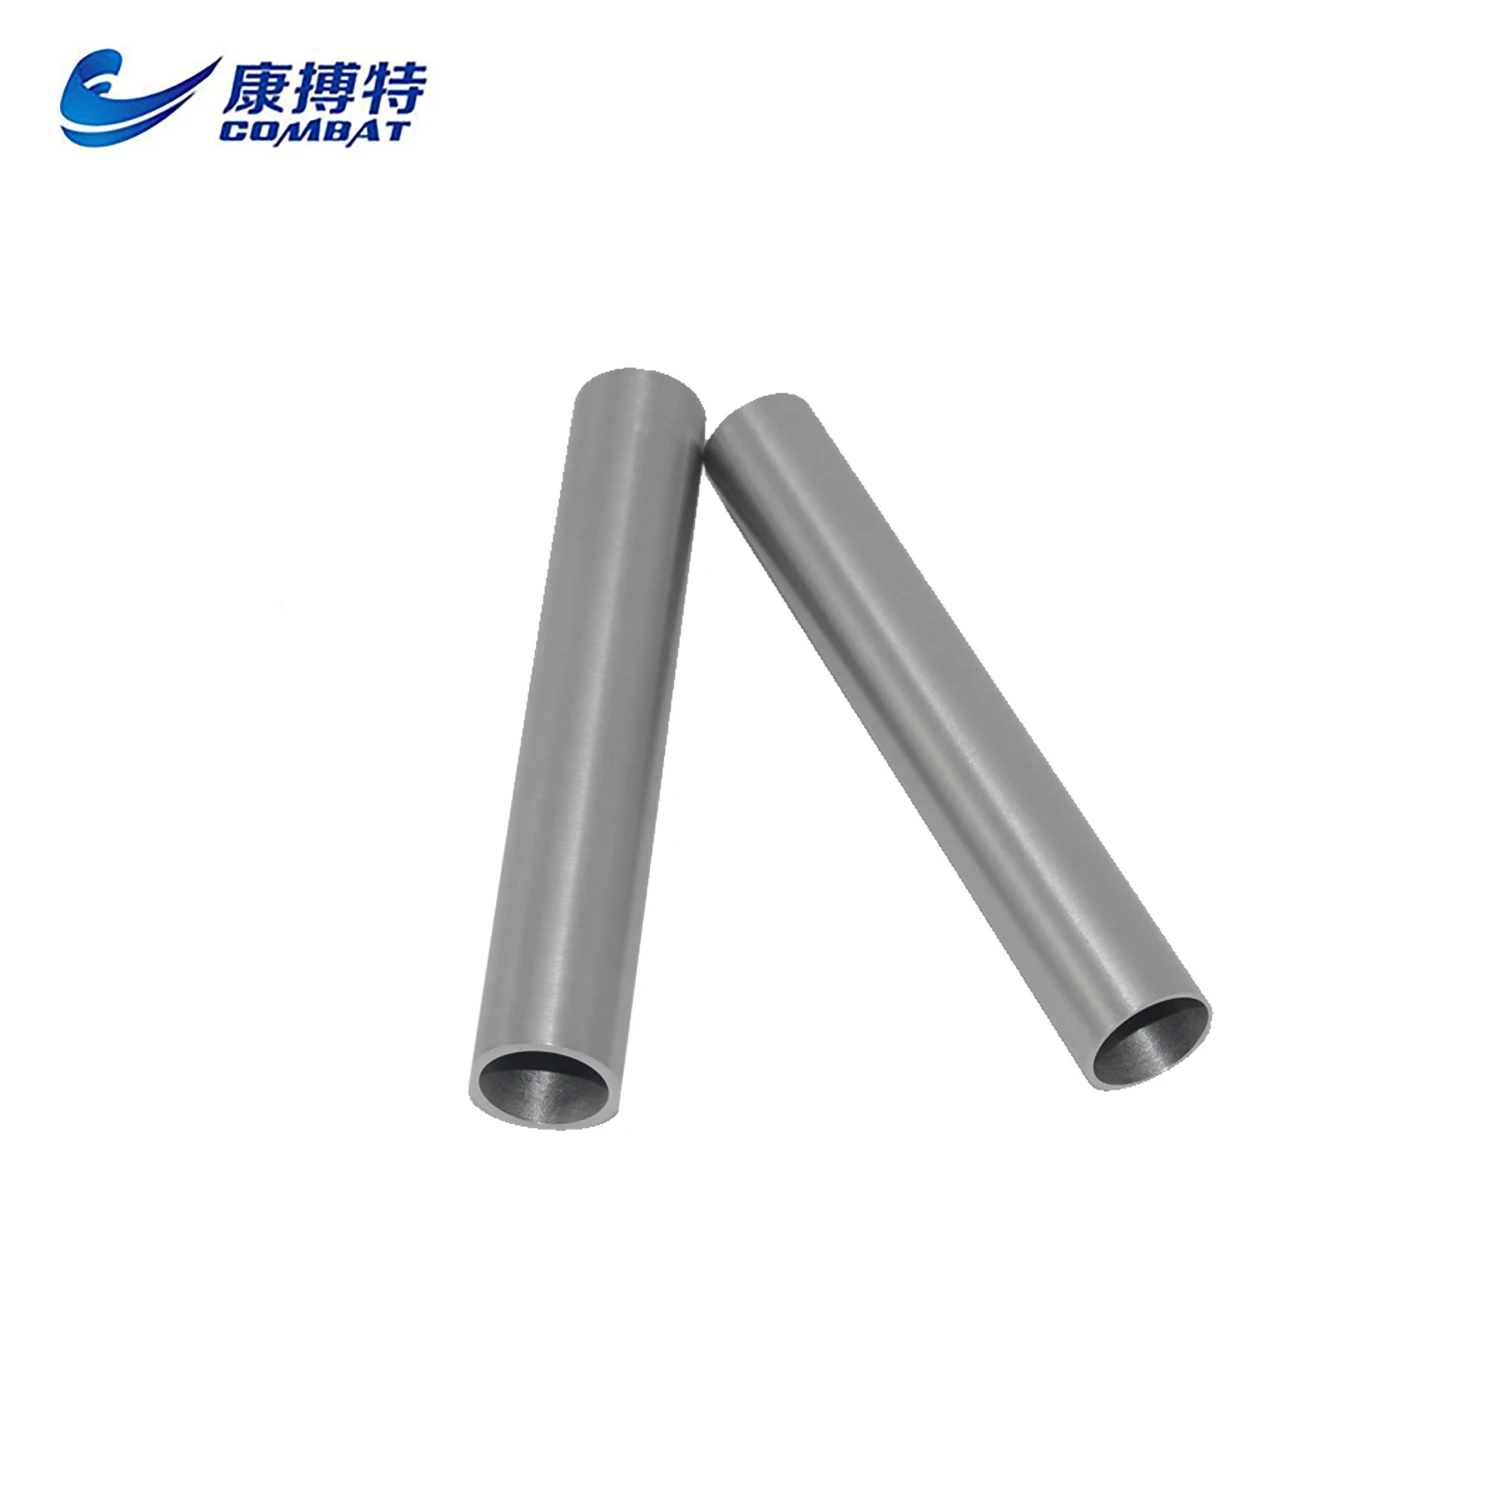 Titanium Exhaust Pipe - Buy Titanium Exhaust Pipe Product on Alibaba.com